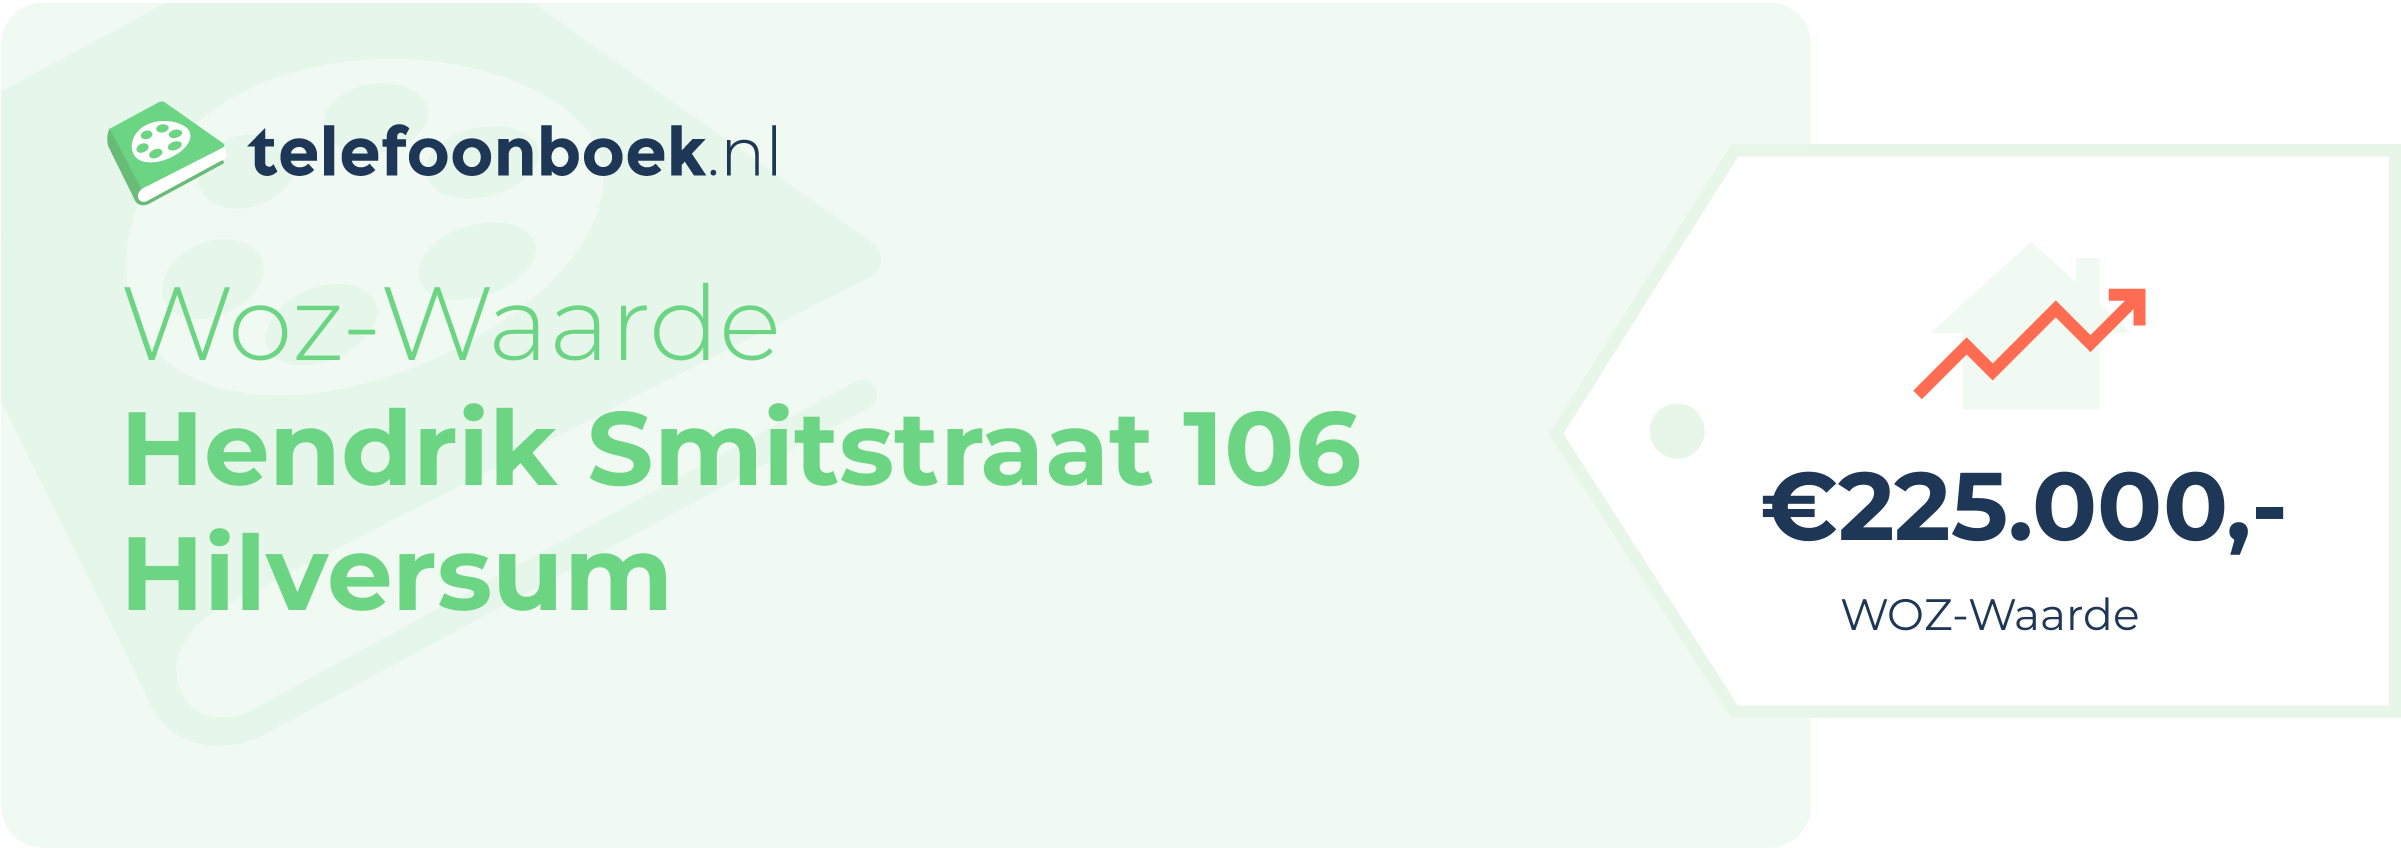 WOZ-waarde Hendrik Smitstraat 106 Hilversum